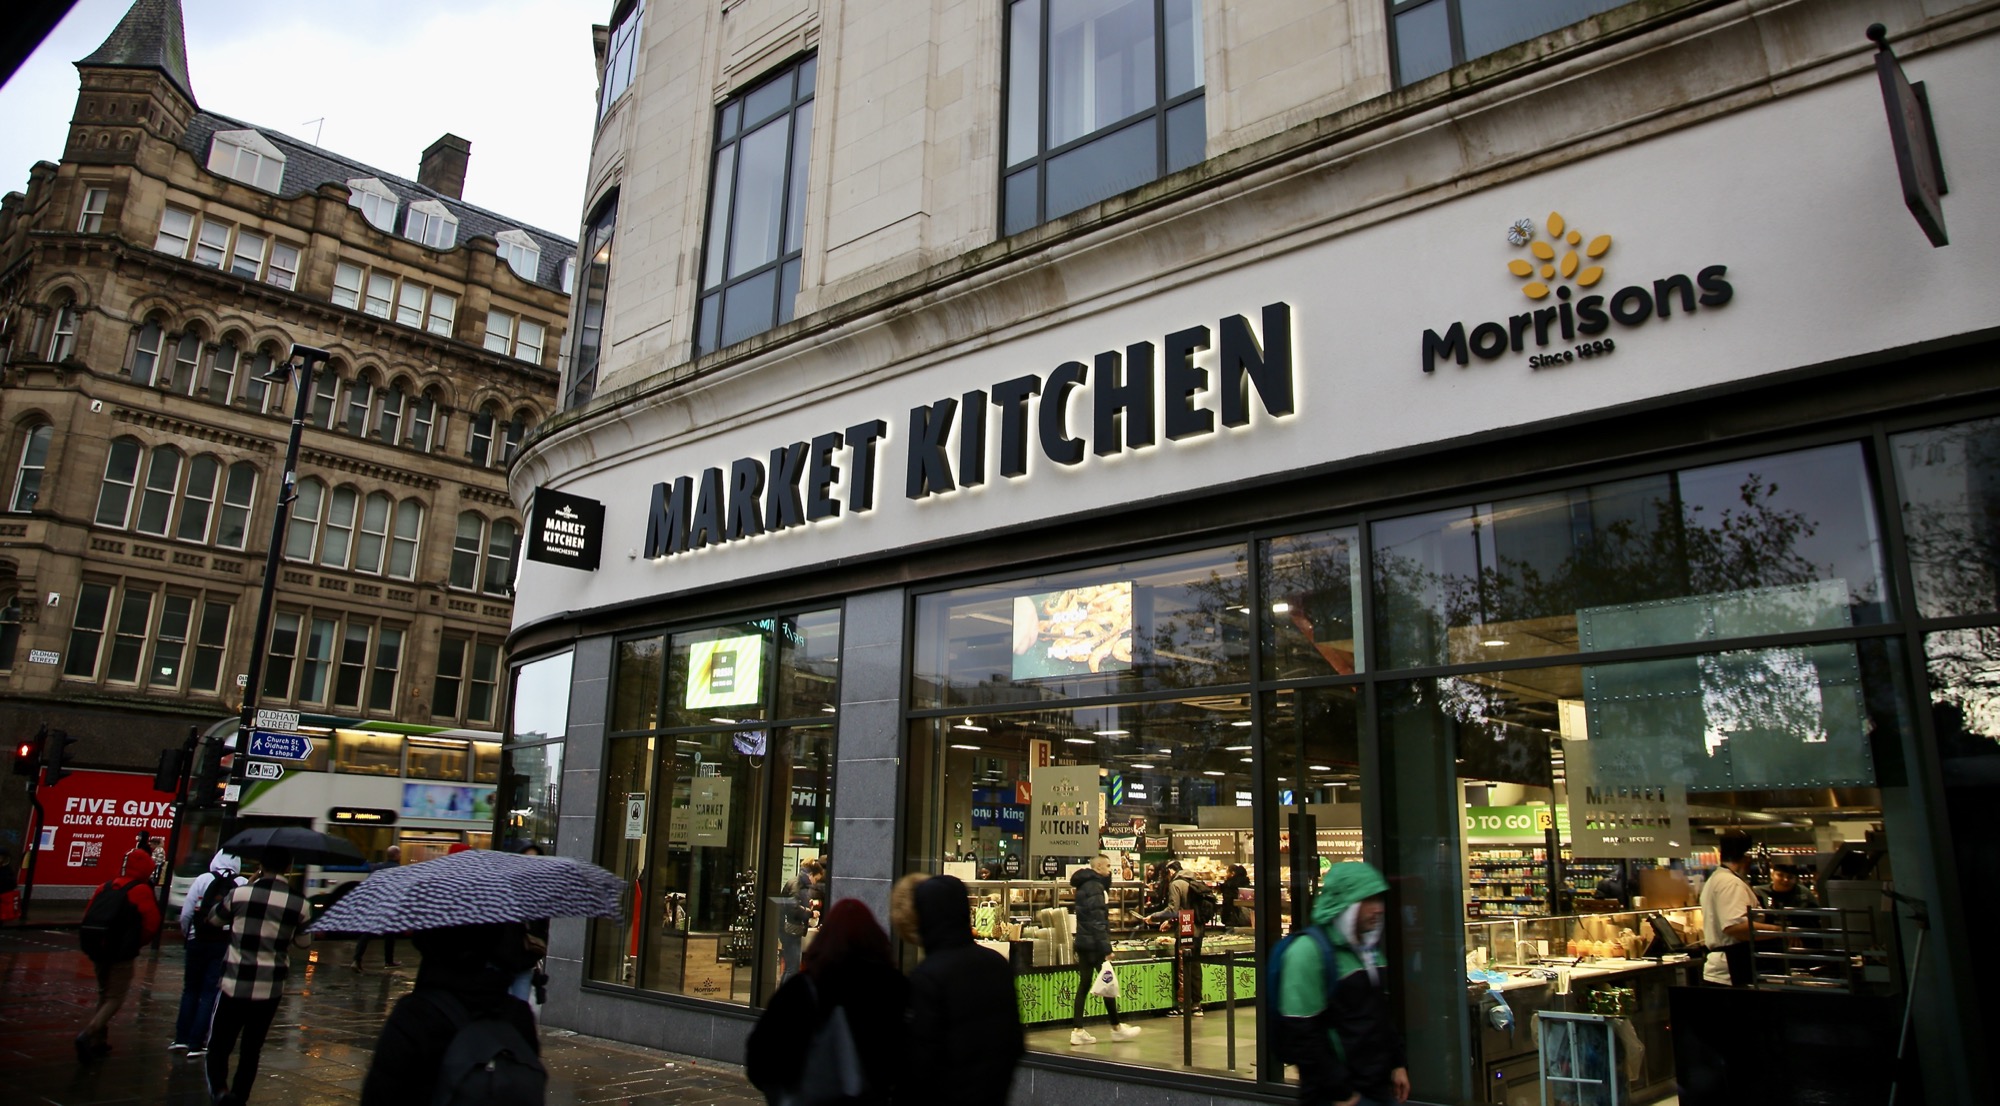 Morrisons Market Kitchen Signage